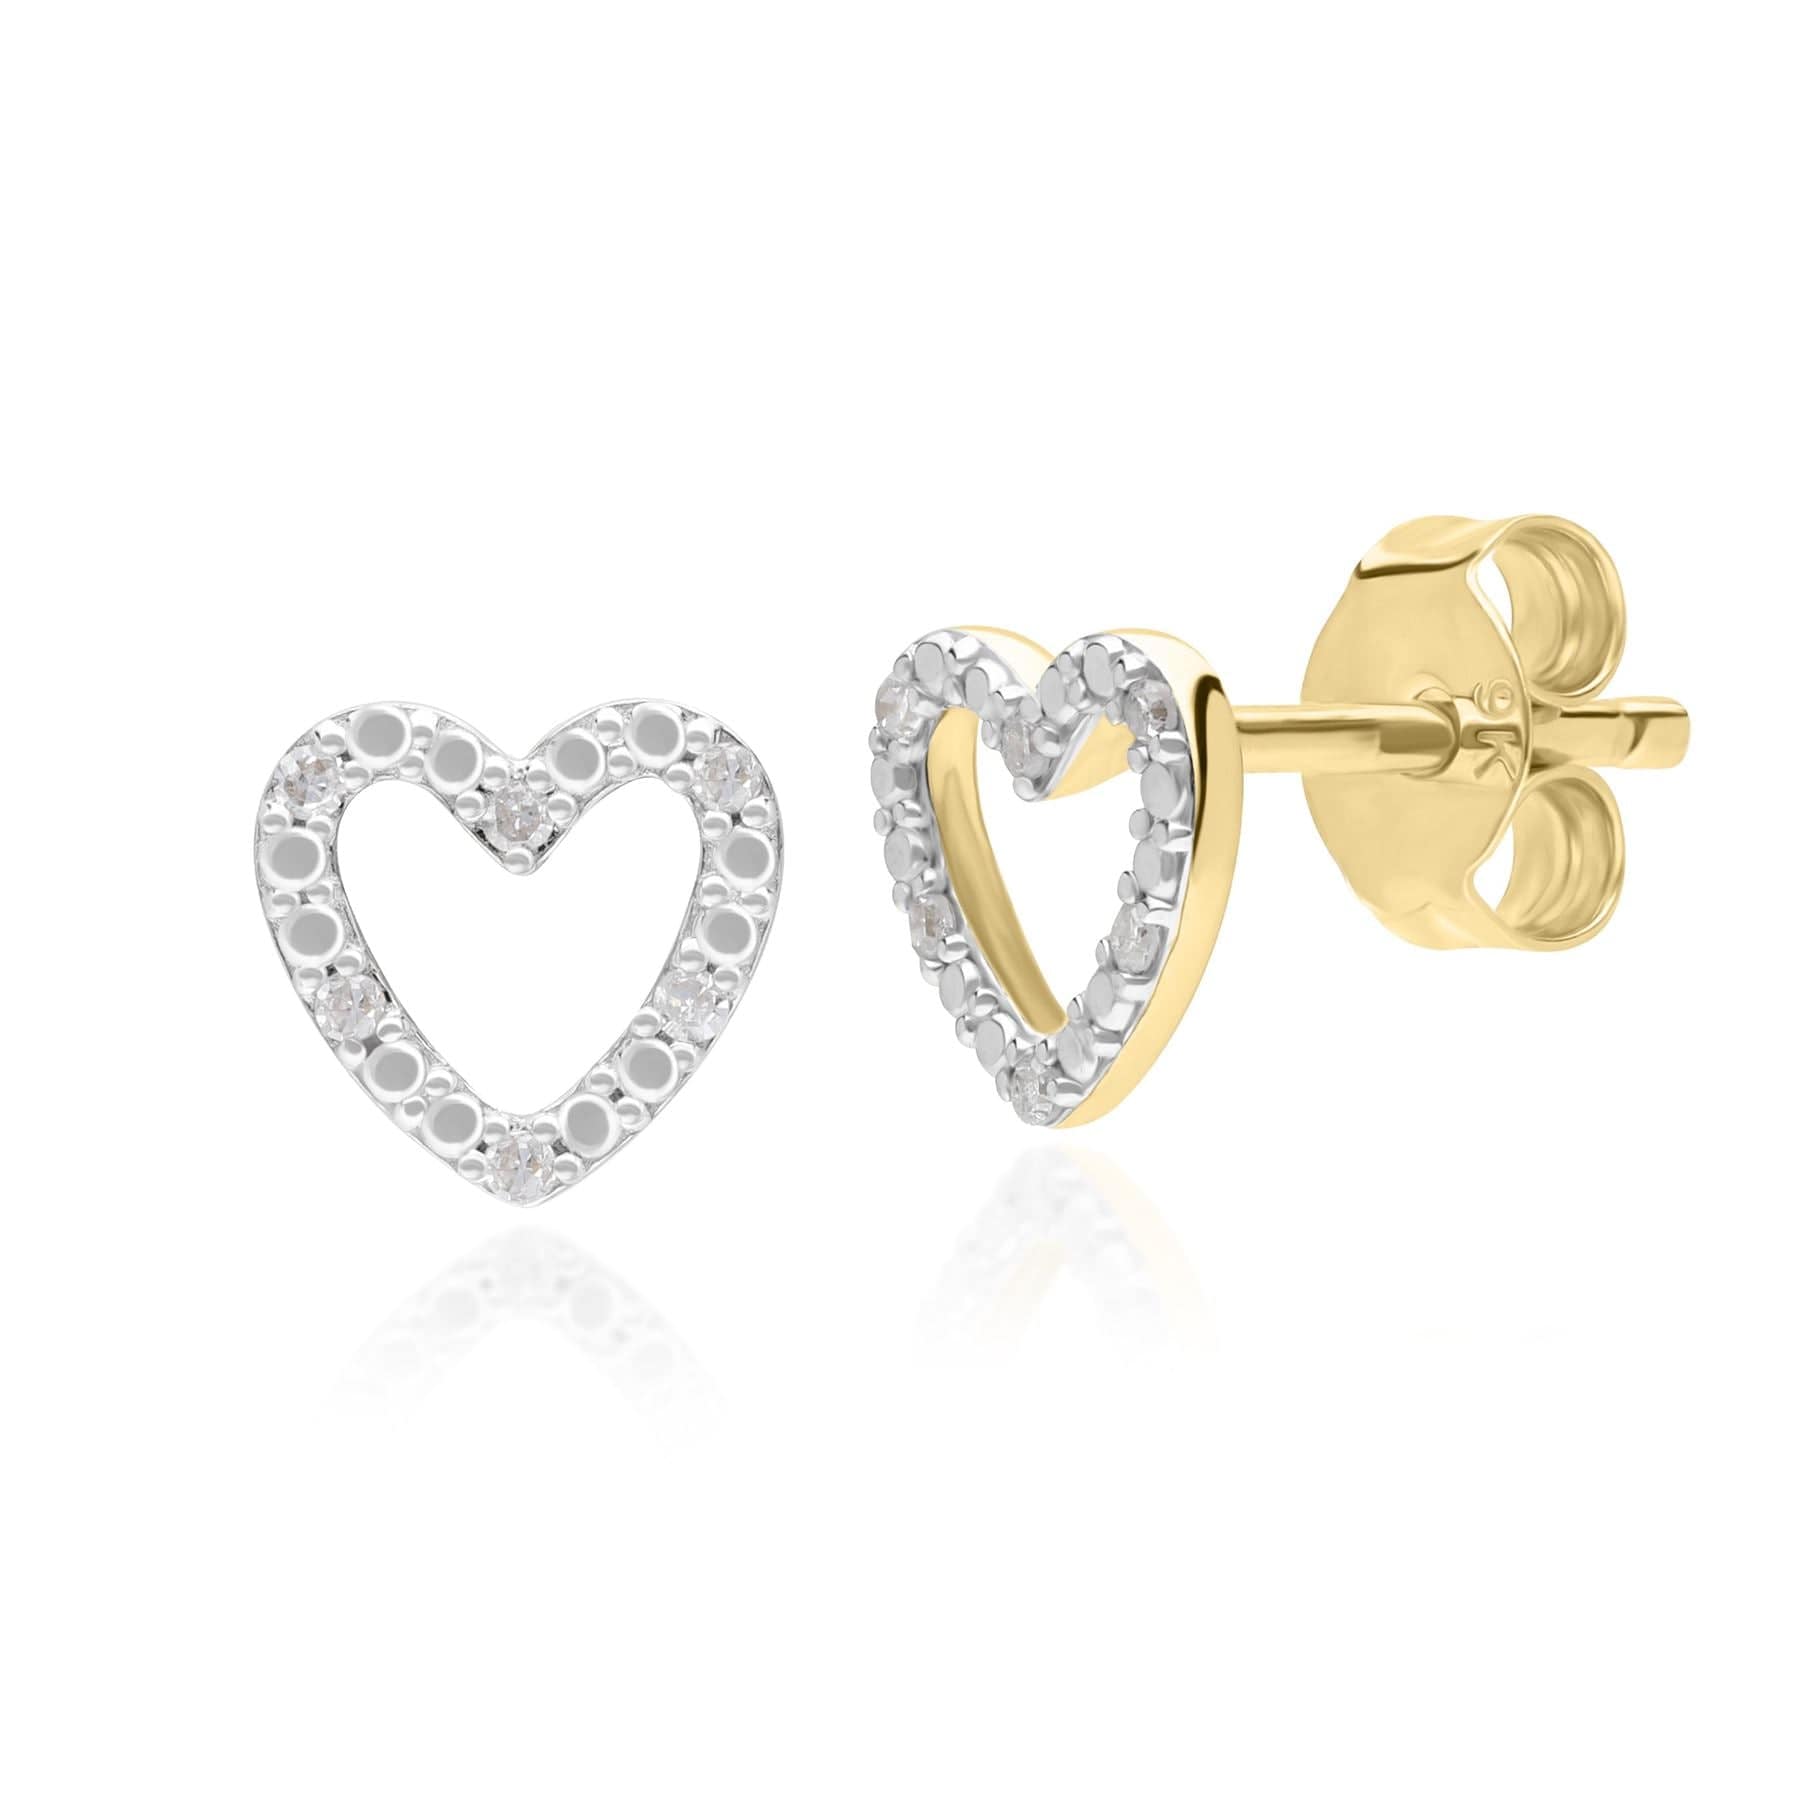 Diamond Love Heart Stud Earrings in 9ct Yellow Gold - Gemondo